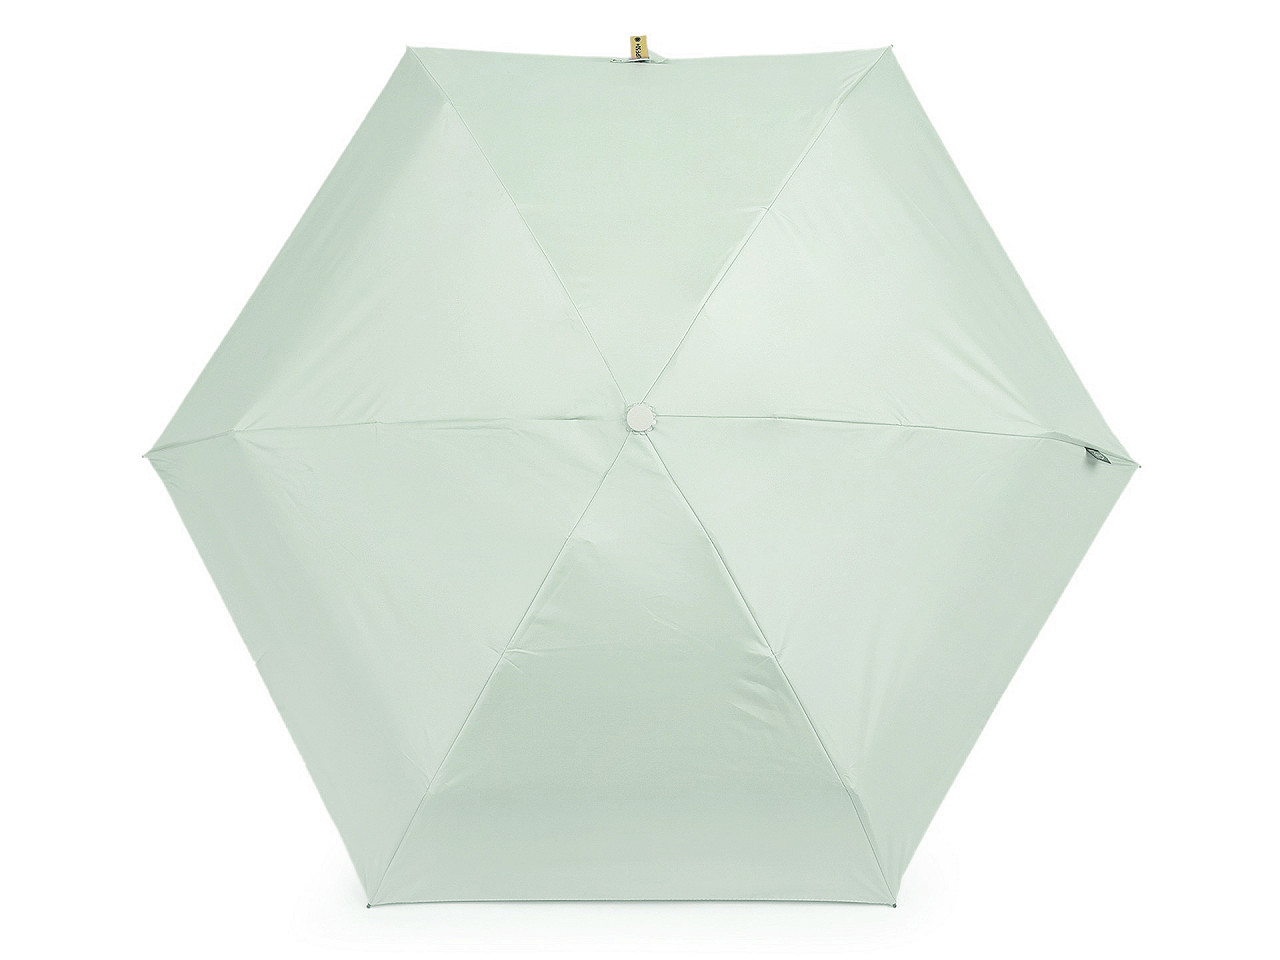 Faltbarer Mini-Regenschirm mit festem Etui, mint, 1 Stk.